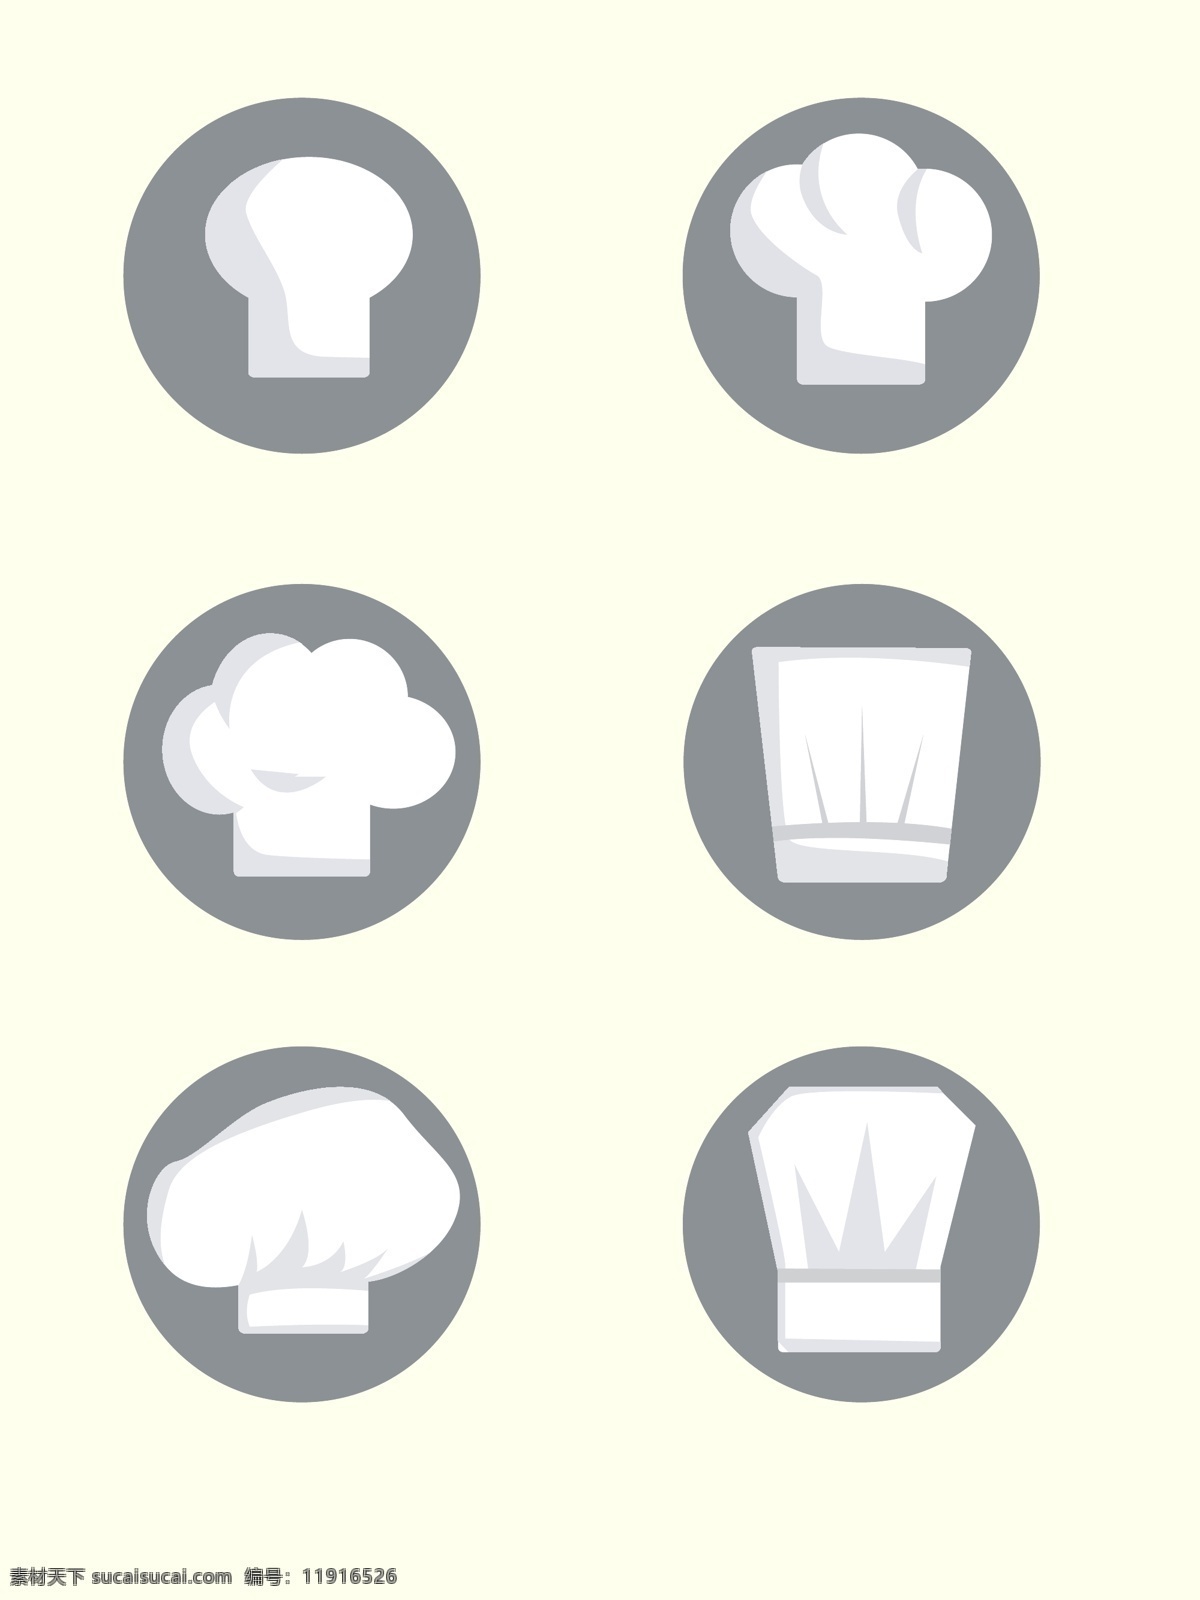 厨师帽图标 小图标 厨房图标 ui 图标设计 厨师 帽子 白色帽子 纹样 标志图标 其他图标